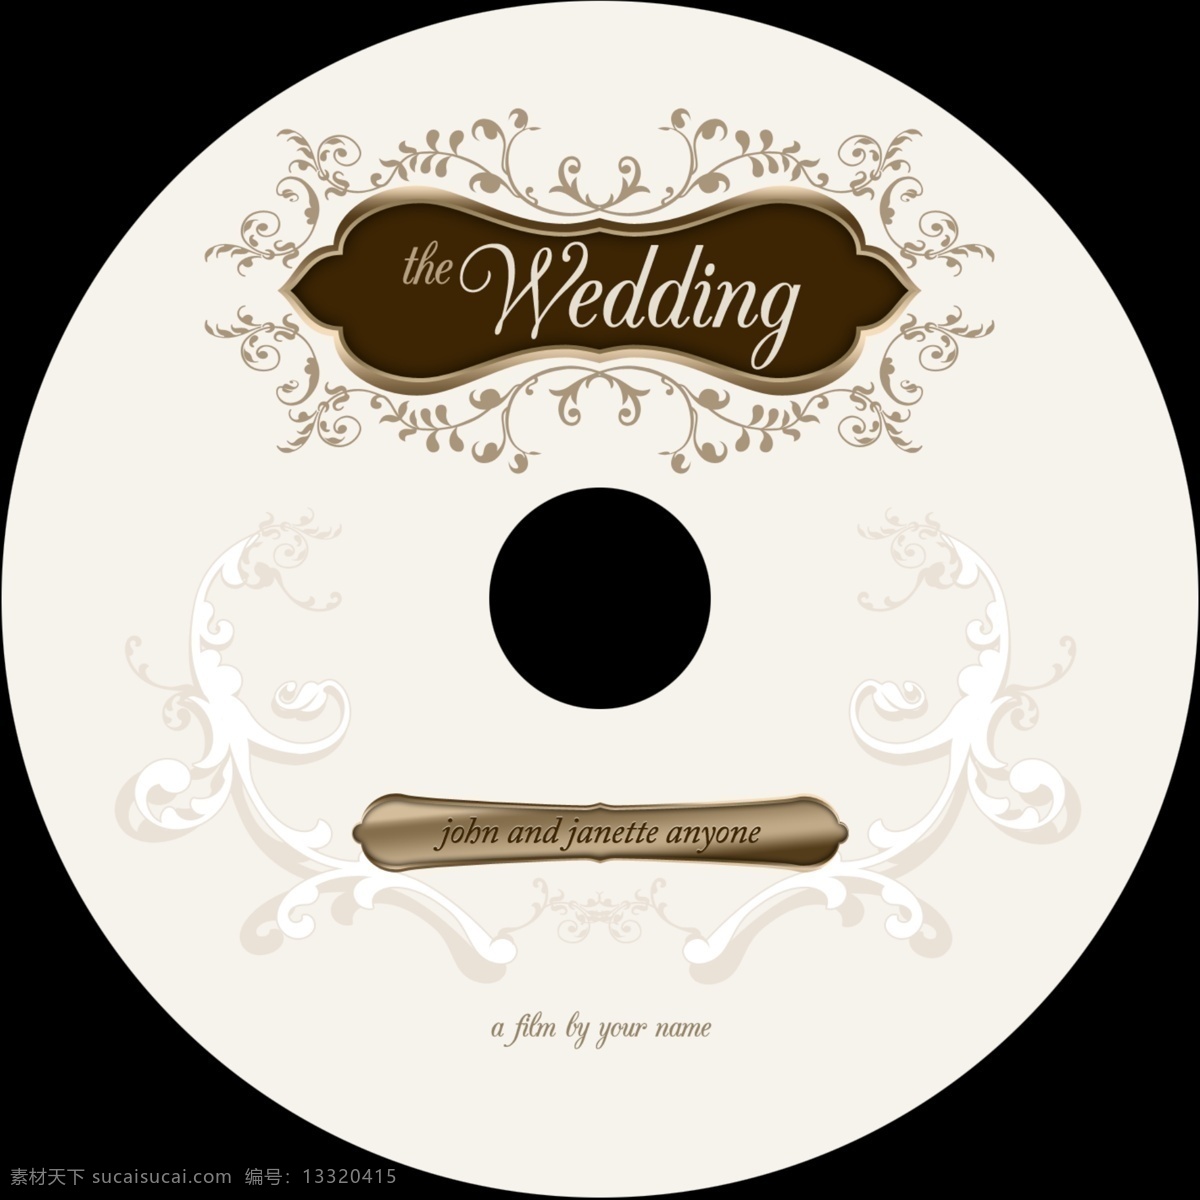 时尚 婚礼 盘面 模板 婚礼礼盘 其他模版 广告设计模板 源文件